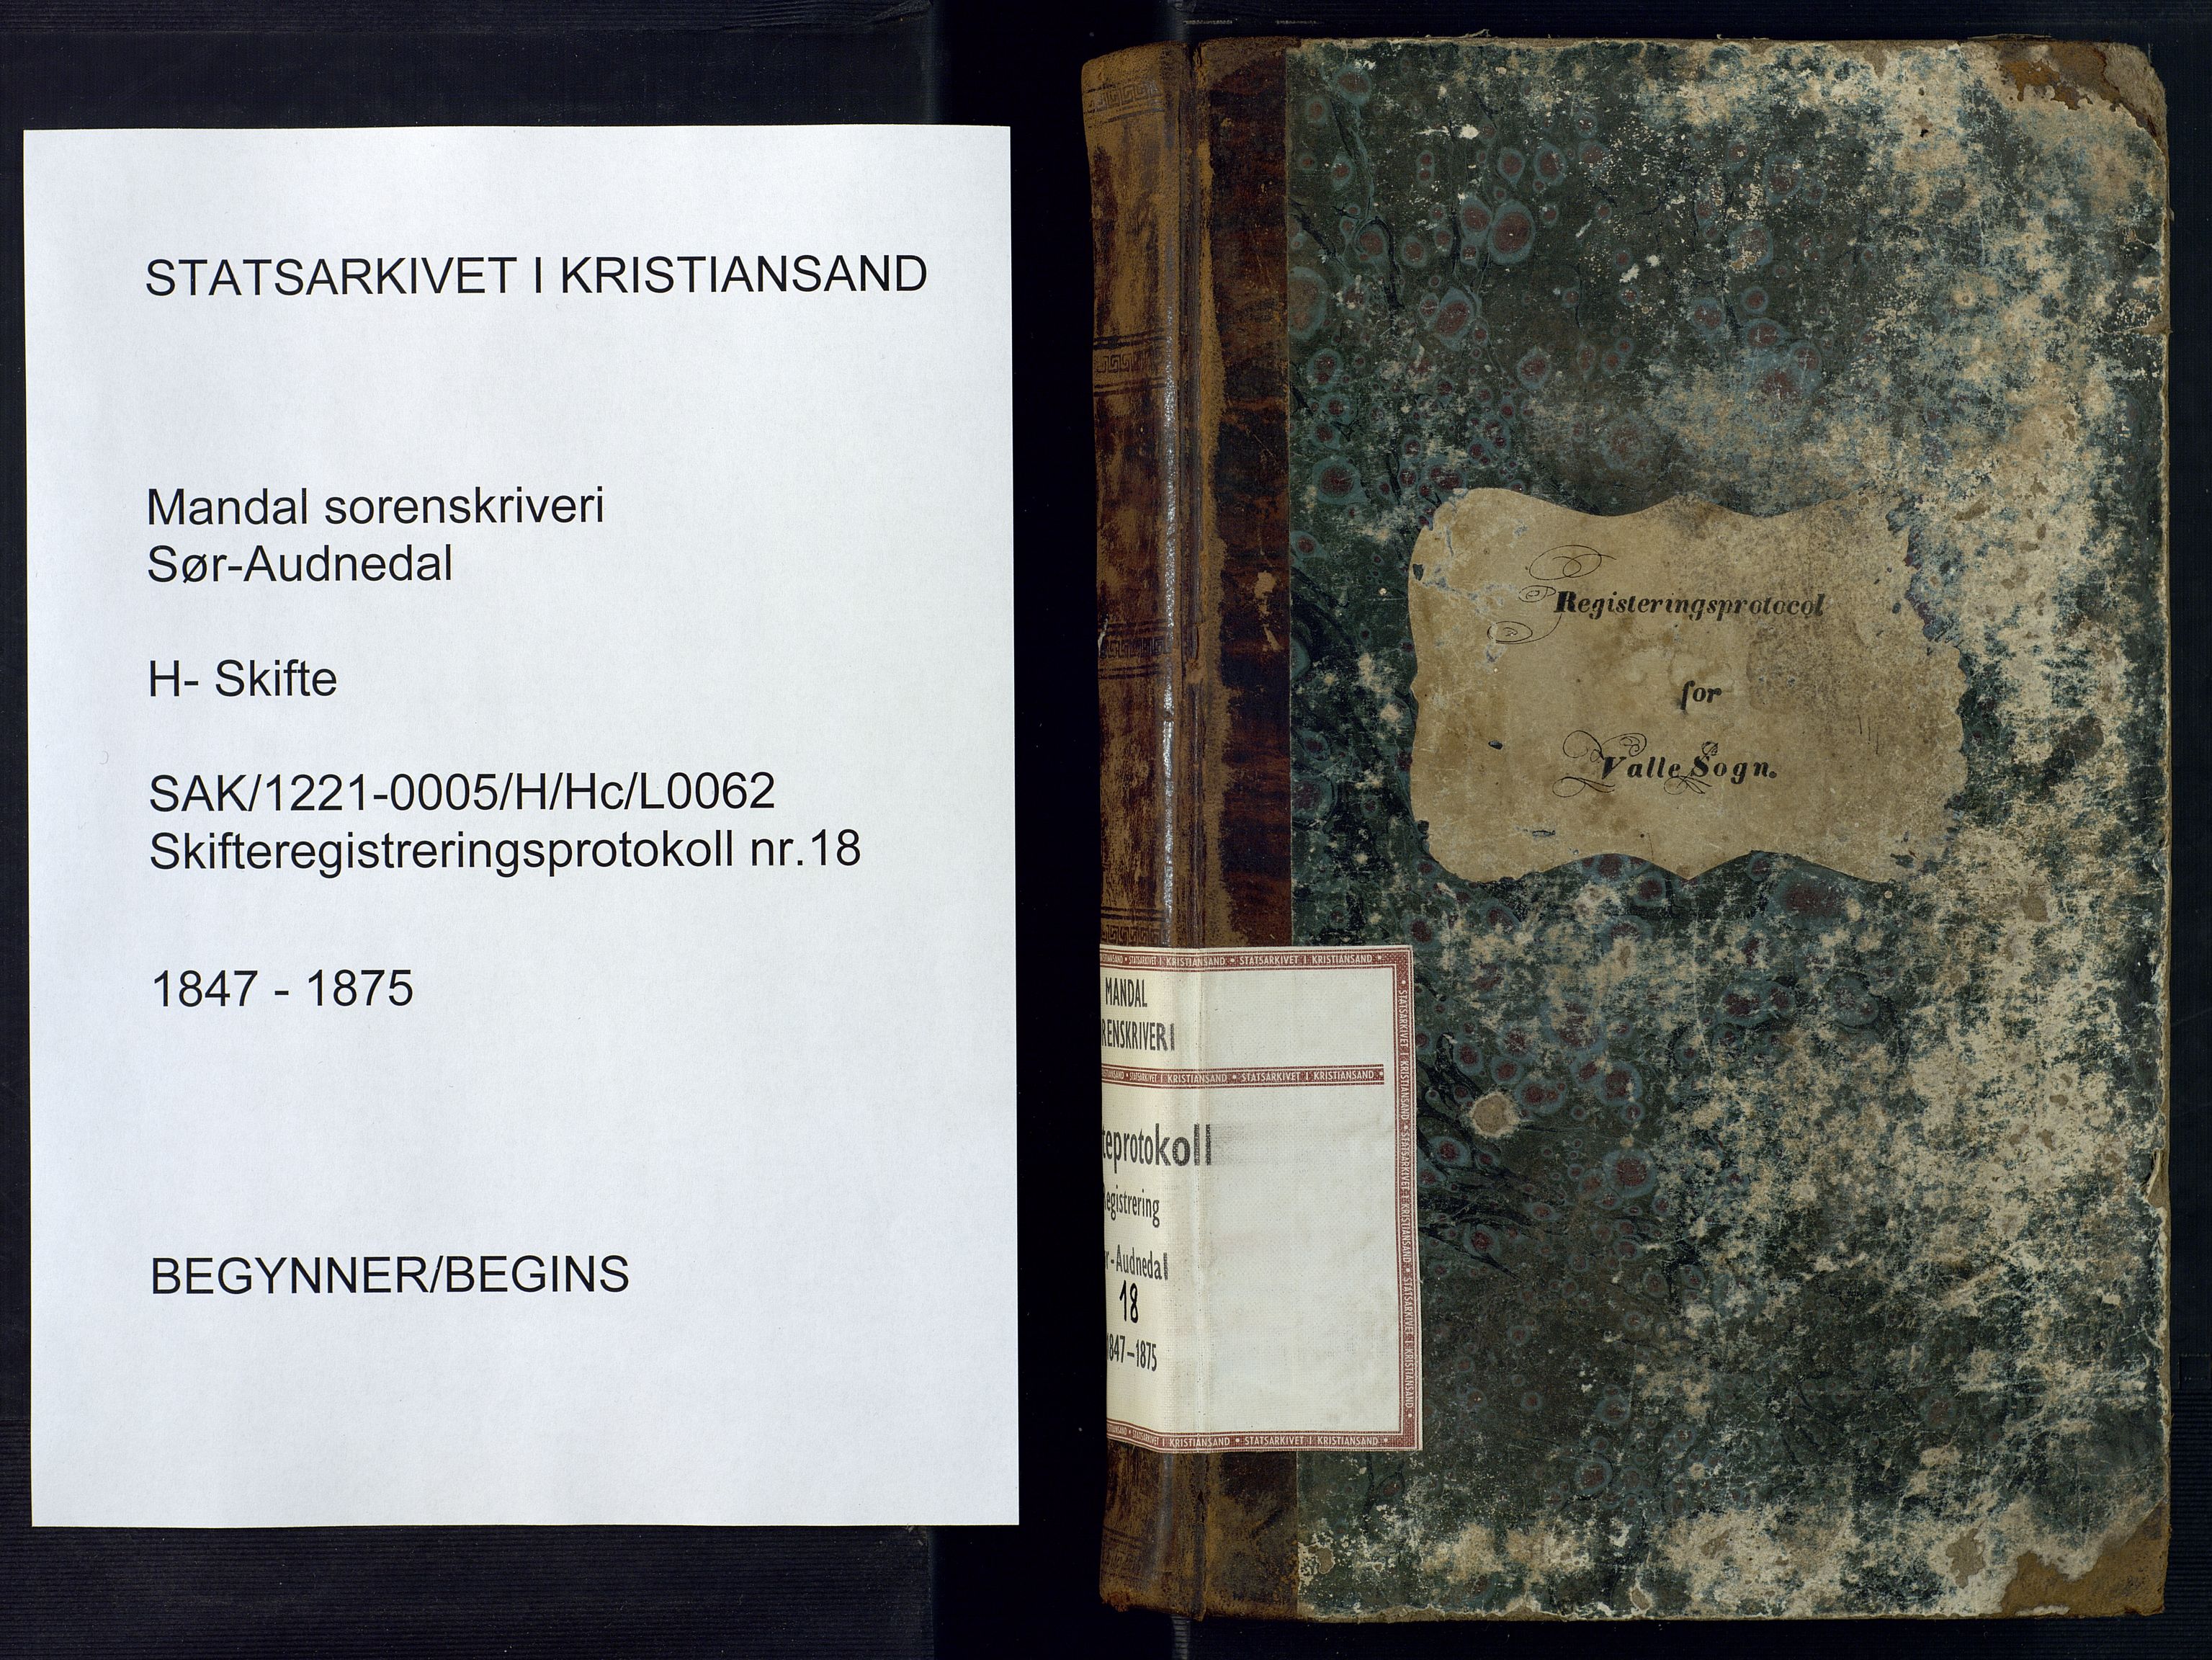 Mandal sorenskriveri, SAK/1221-0005/001/H/Hc/L0062: Skifteregistreringsprotokoll nr 18 Sør-Audnedal, 1847-1875